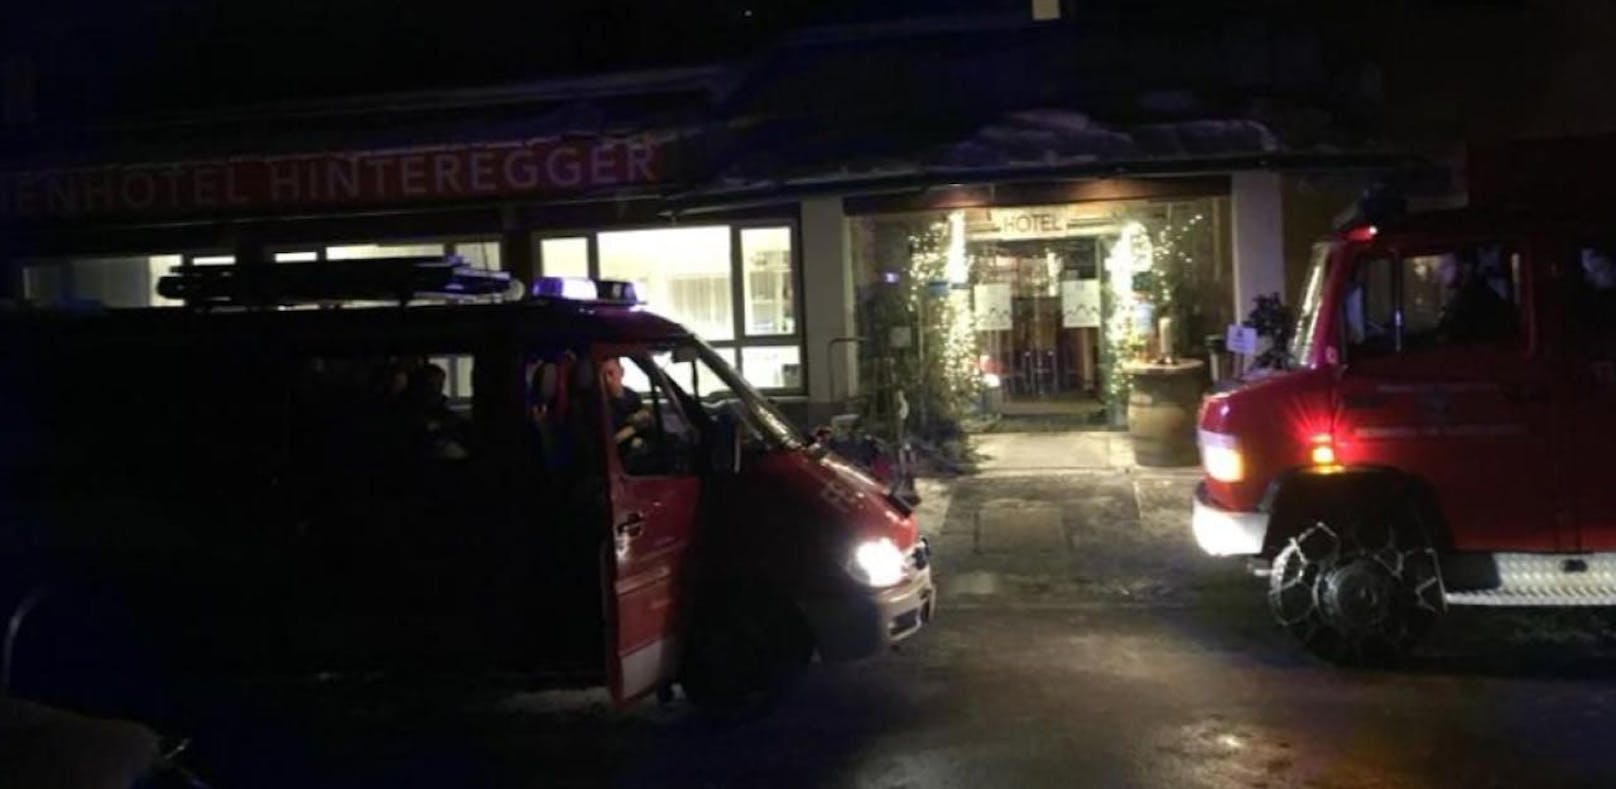 Das Hotel am Katschbert wurde evakuiert